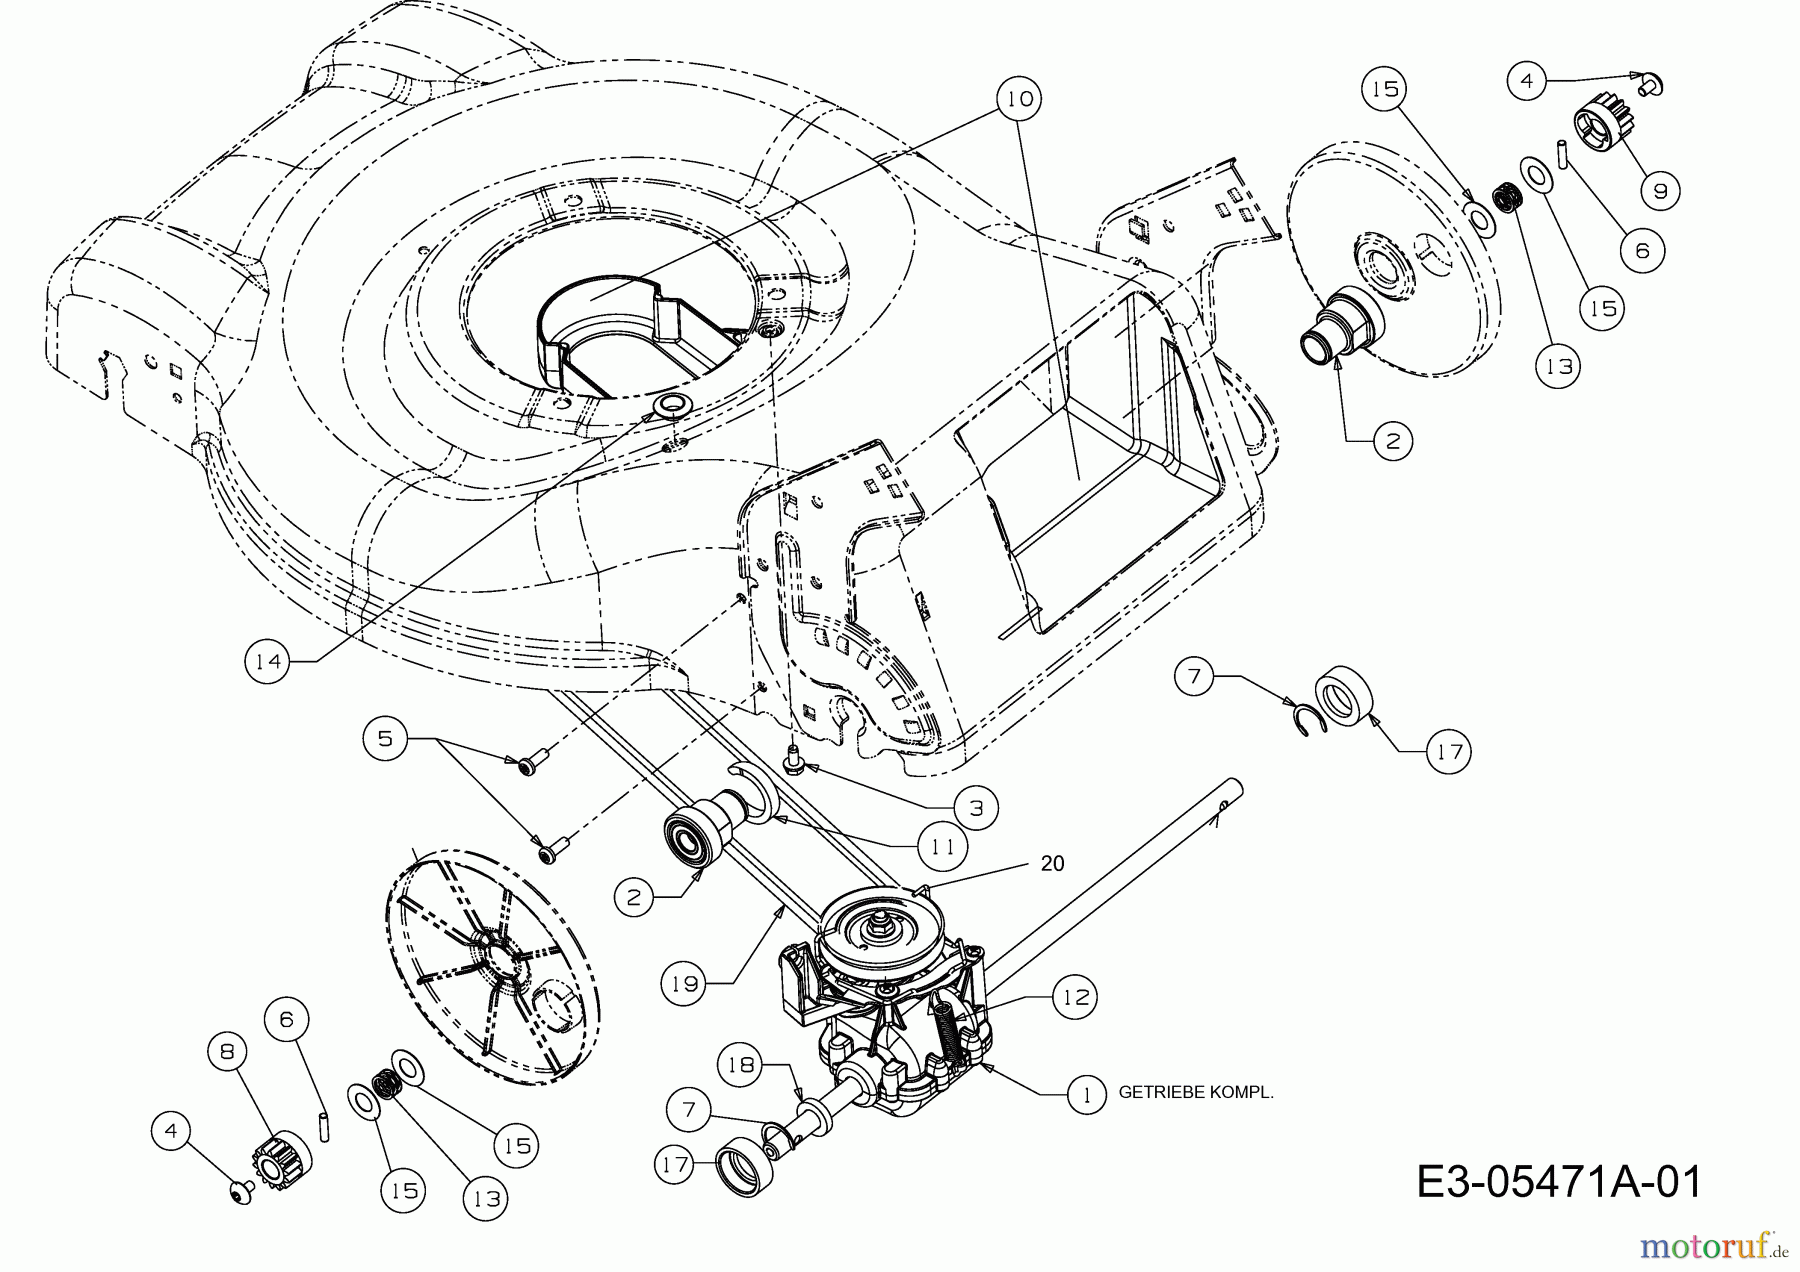  Raiffeisen-Markt Motormäher mit Antrieb RB 46 A 12D-J54M628 (2011) Getriebe